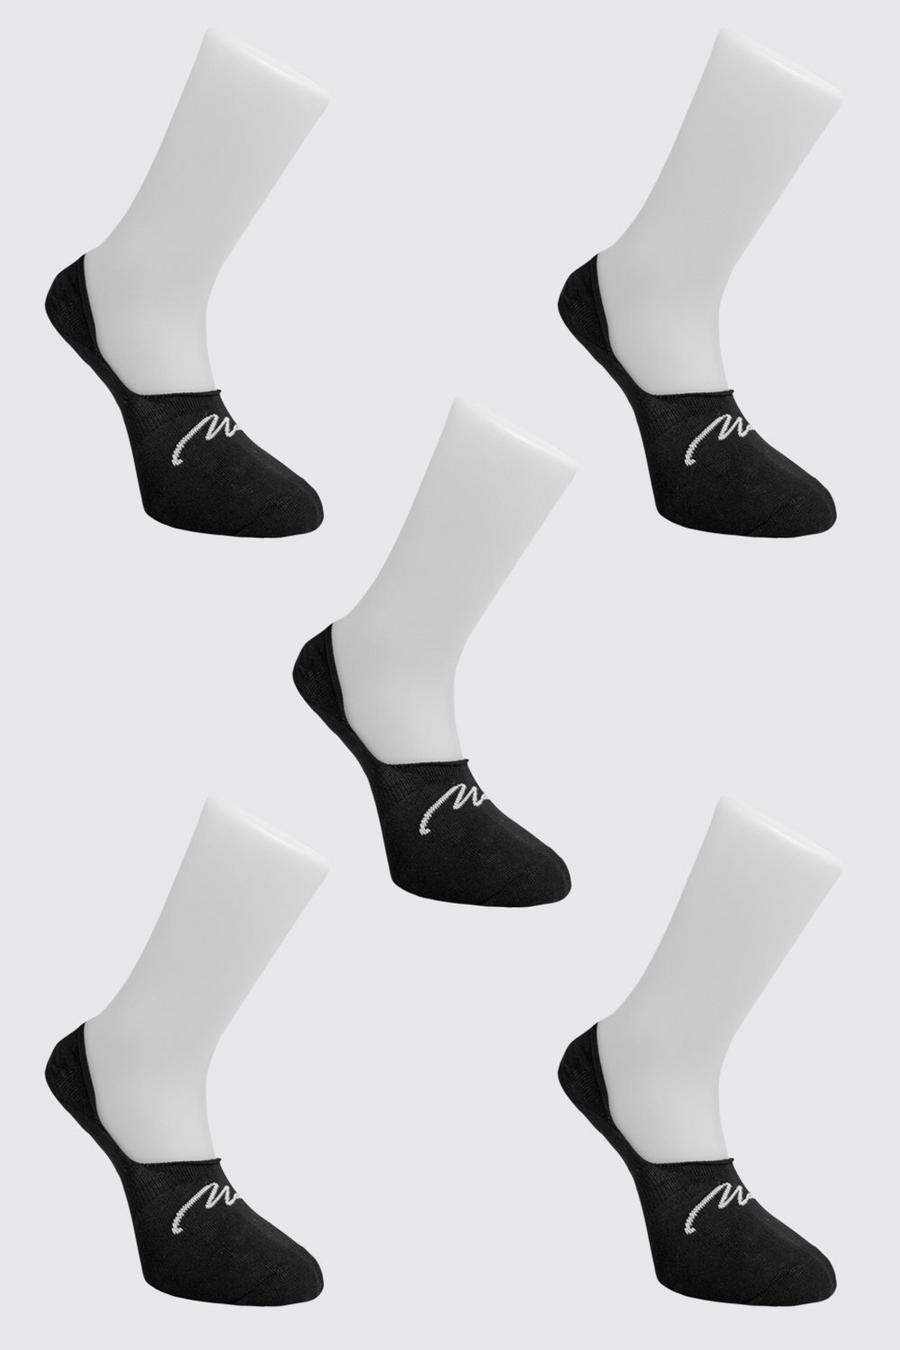 שחור nero מארז 5 זוגות גרביים בלתי נראים עם חתימת MAN